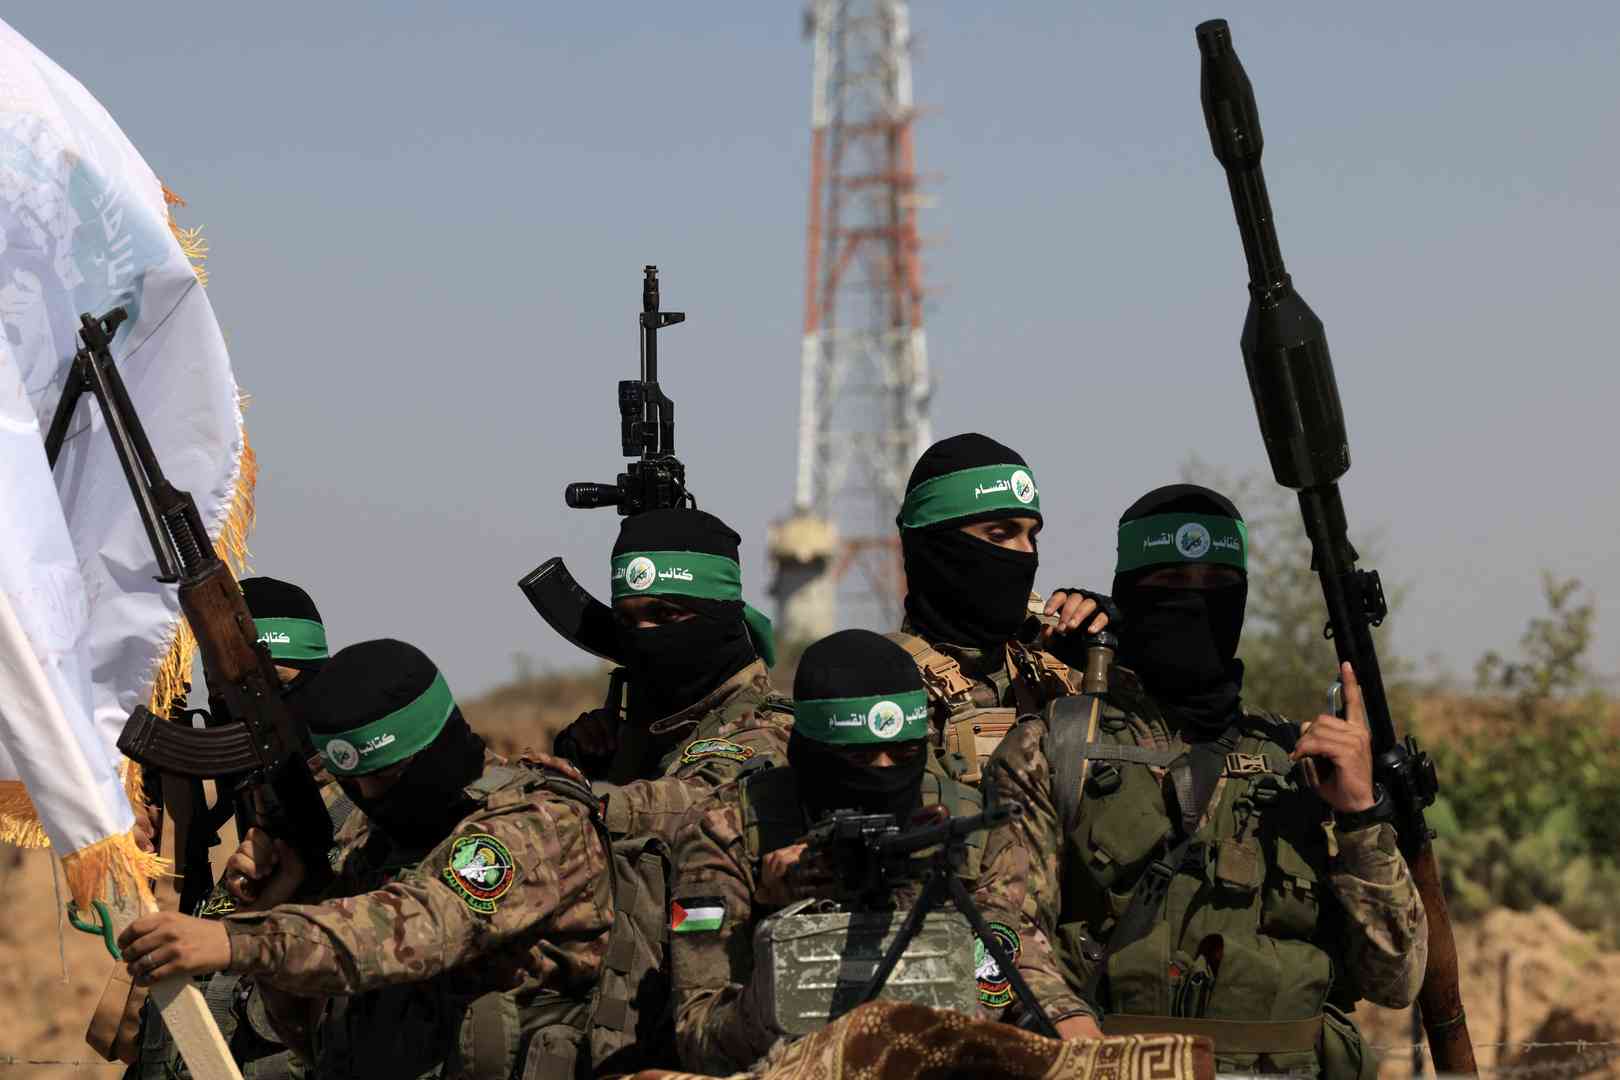 القسام تعلن استهداف آليات للاحتلال وإيقاع القتلى بين جنودهم